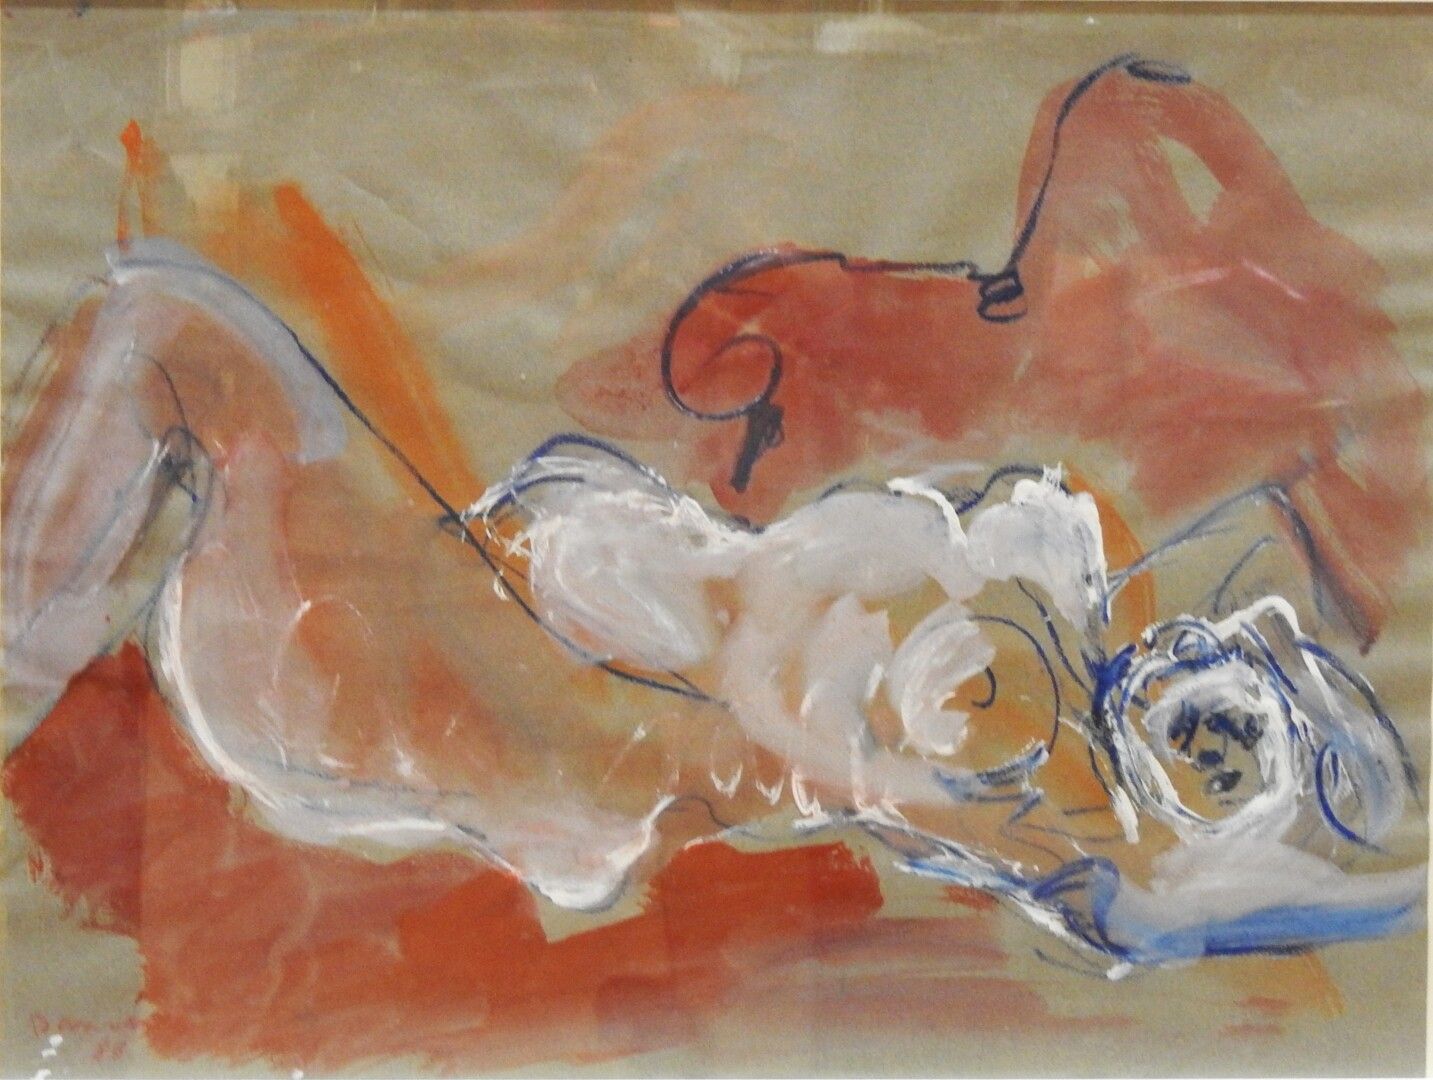 Null 伯纳德-达米亚诺 (1926 - 2000)

躺着的女人

水彩和白色水粉的亮点，左下方有签名和日期1983年

65 x 50厘米